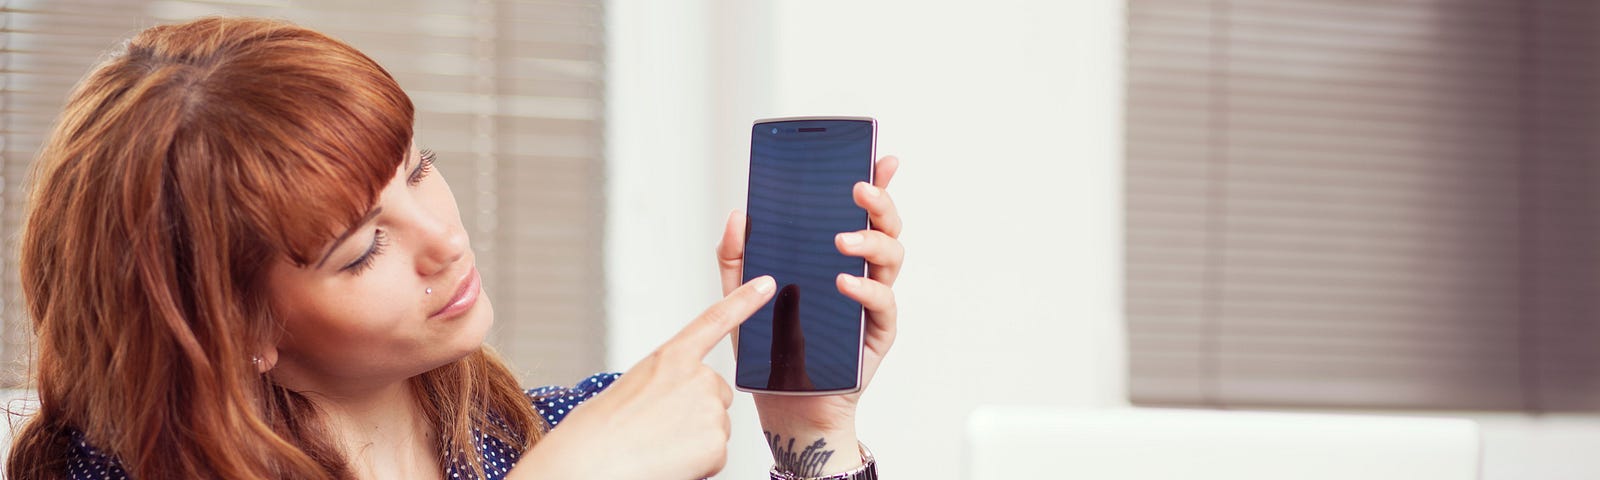 Woman touching smartphone screen